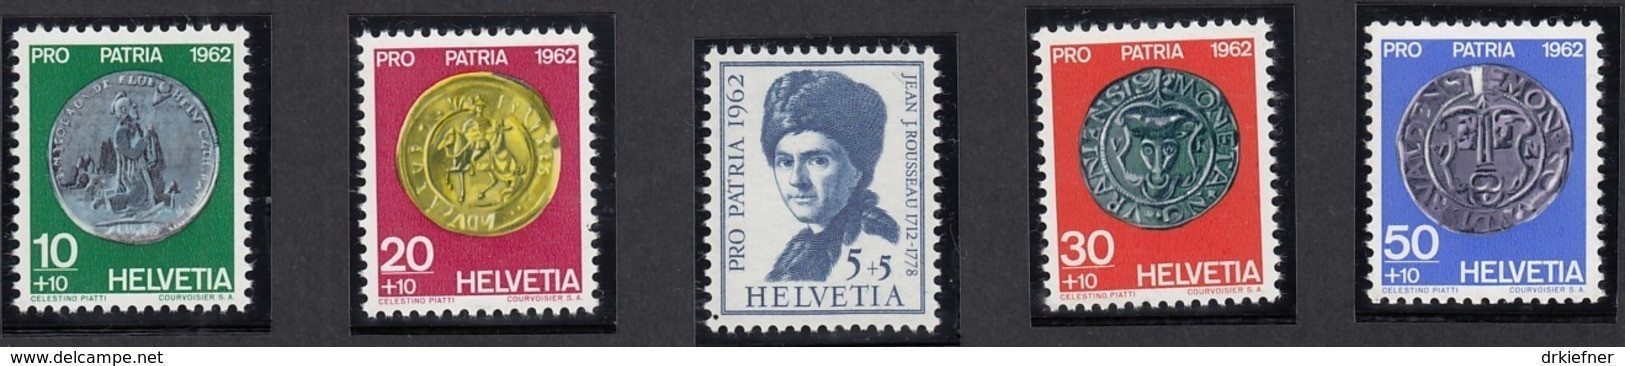 SCHWEIZ  751-755,  Postfrisch **, Pro Patria 1962, Münzen - Unused Stamps